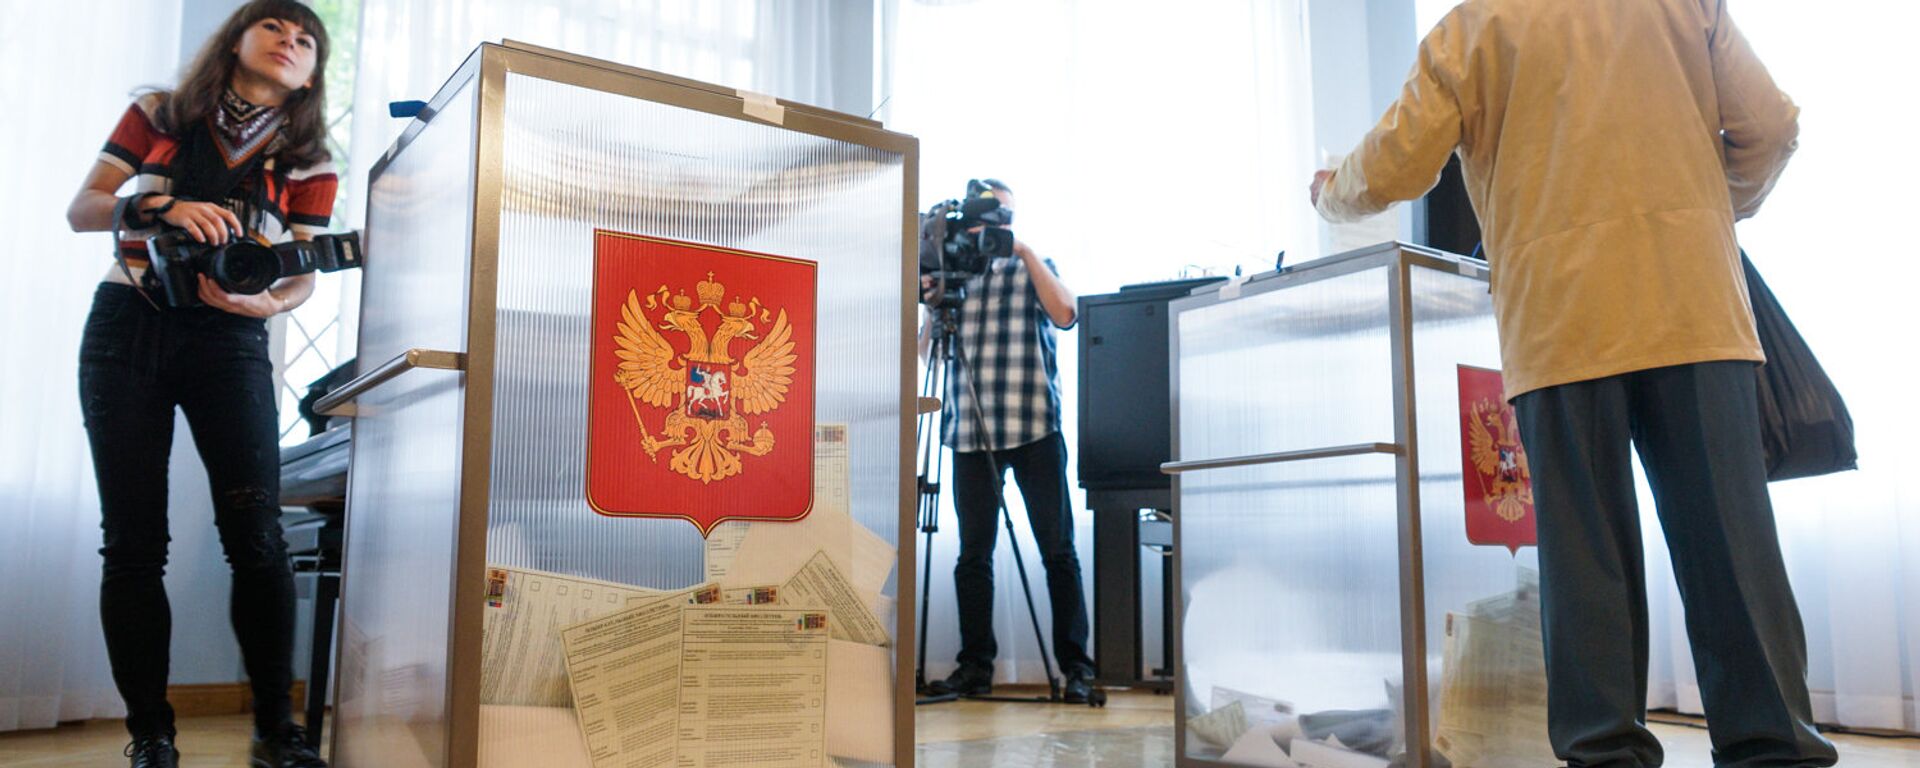 На избирательном участке в Посольстве России - Sputnik Latvija, 1920, 07.08.2021